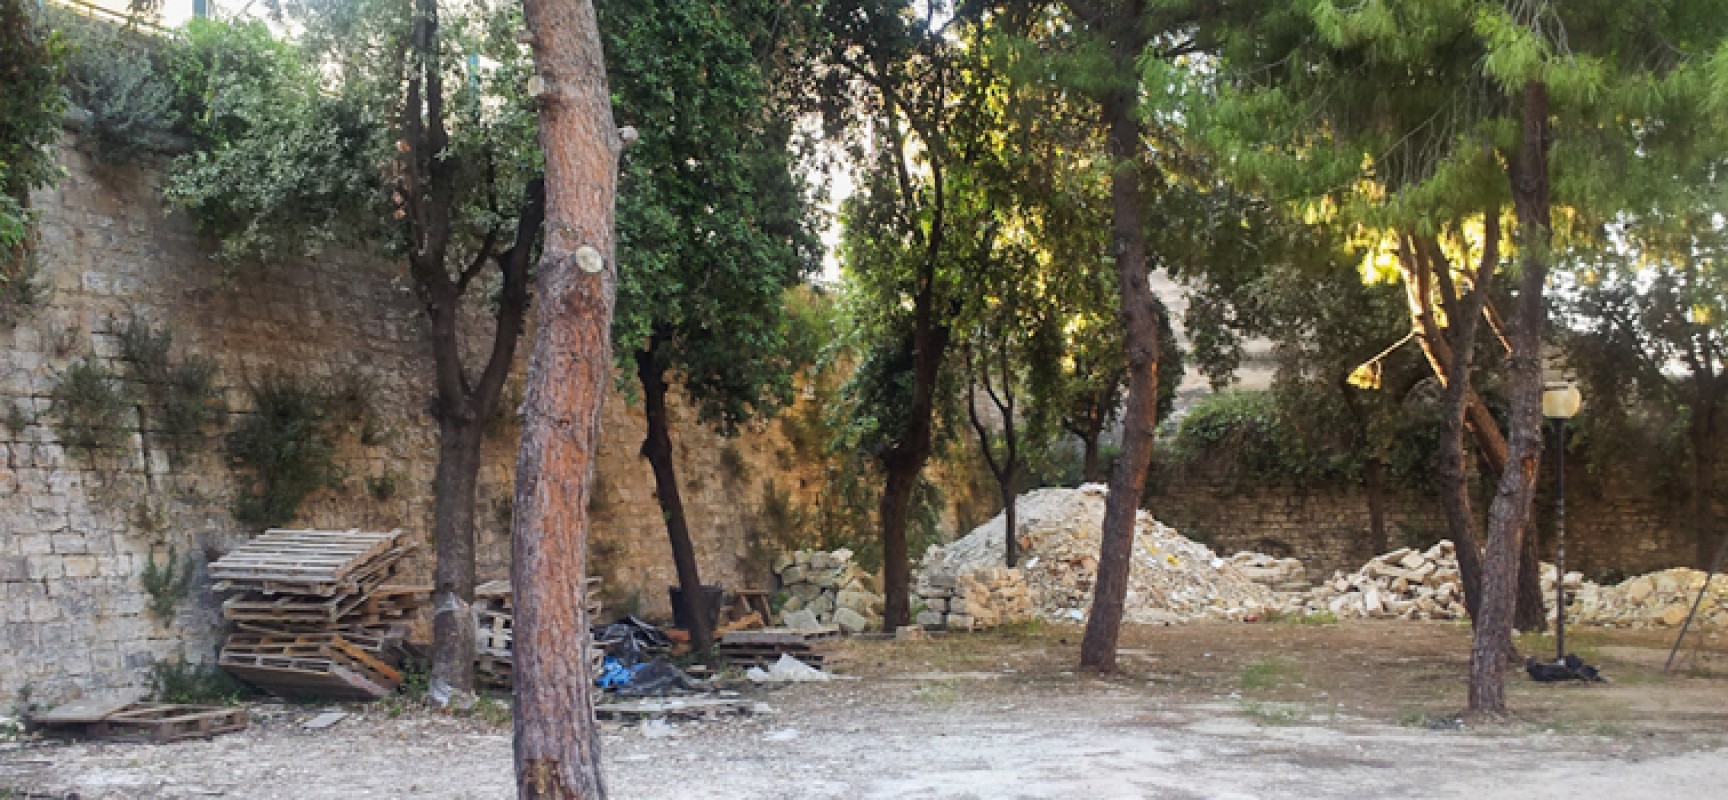 Parco delle beatitudini in stato di abbandono, l’appello di Mauro Simone al sindaco / FOTO